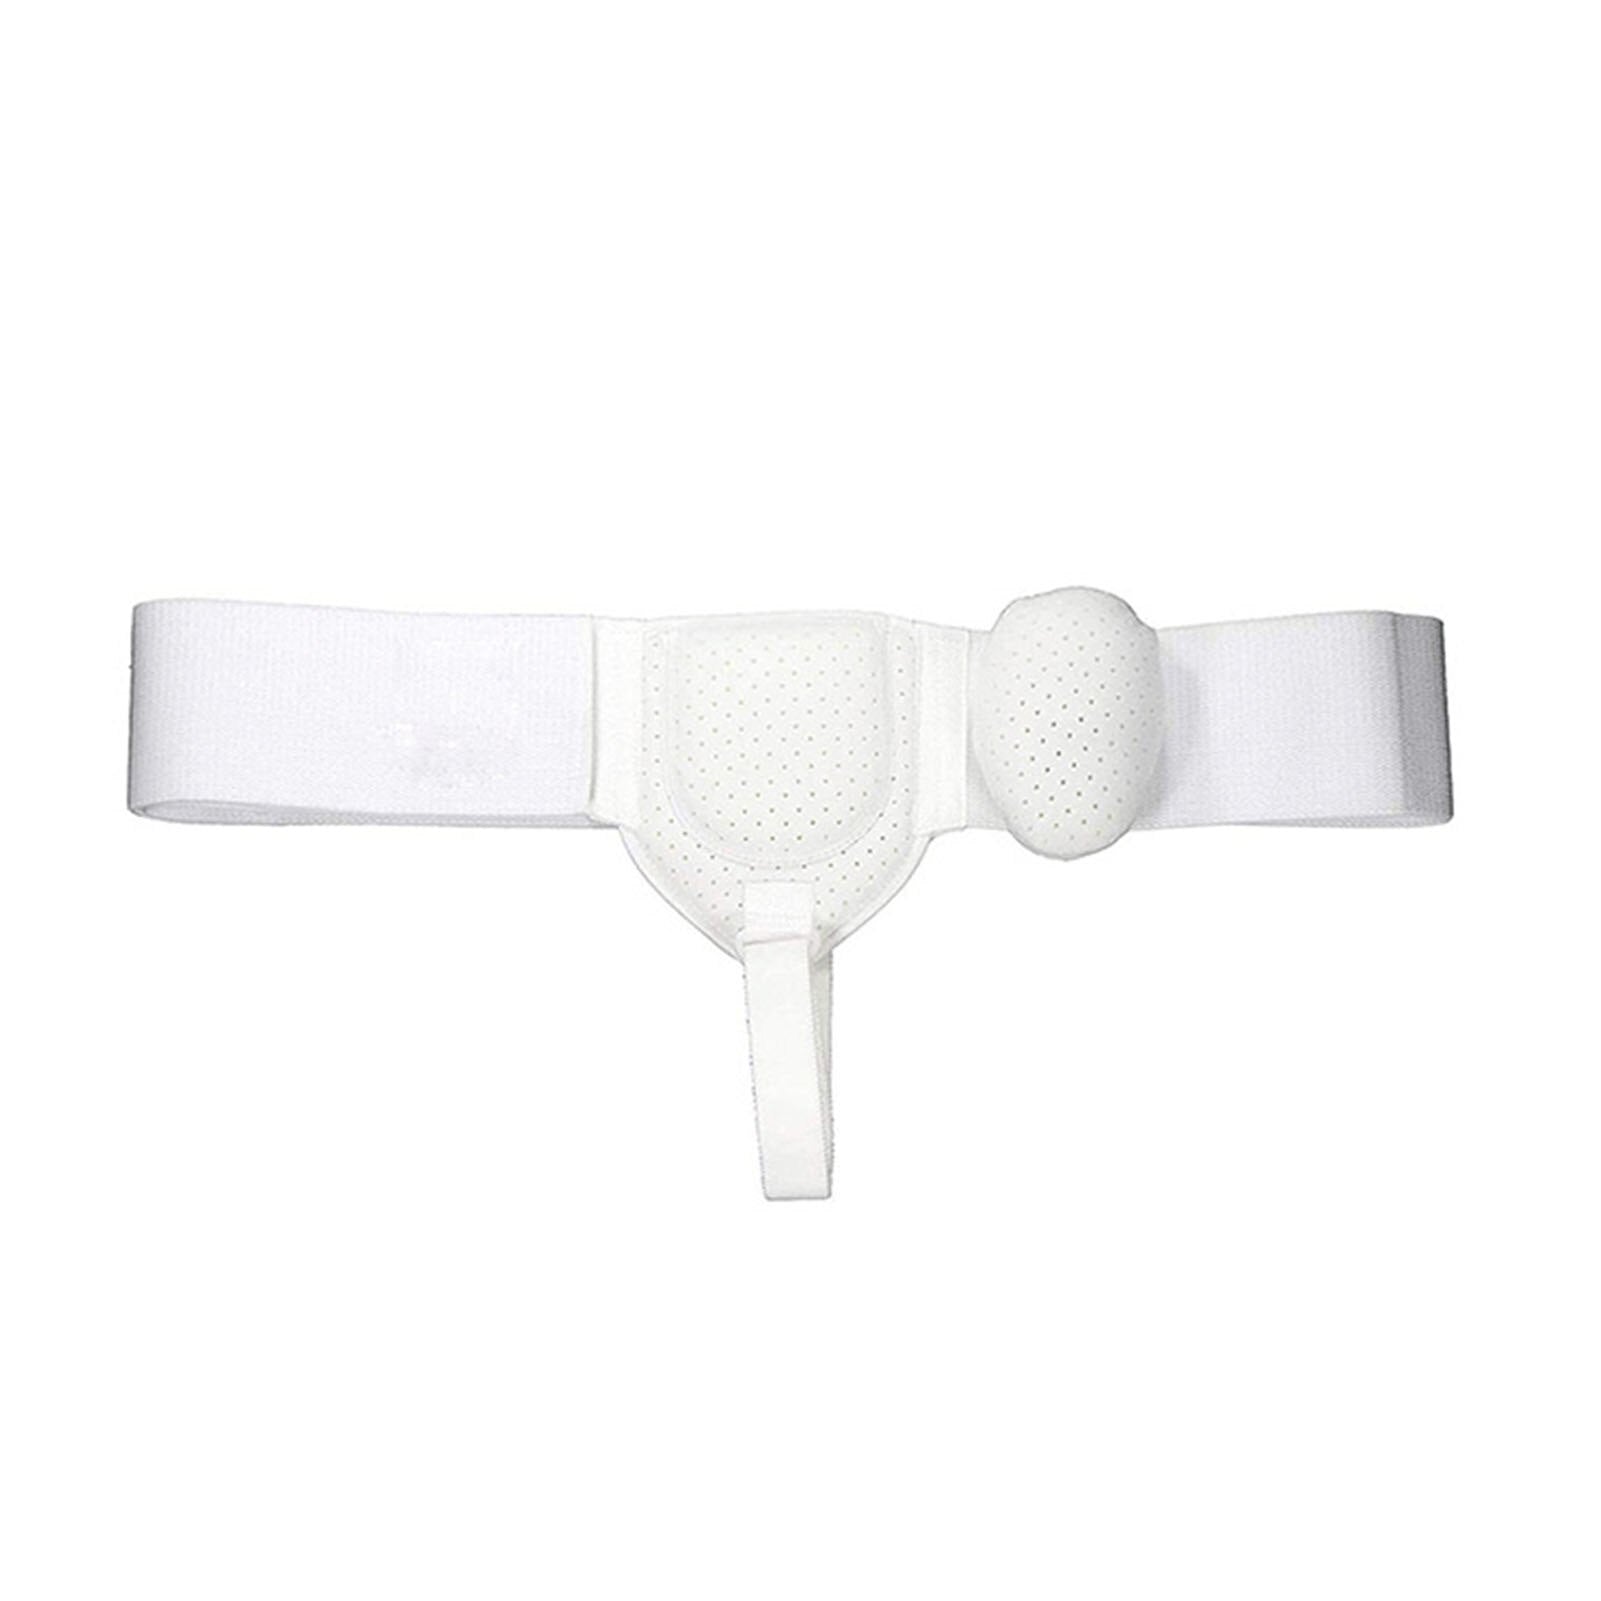 Adjustable Inguinal Hernia Belt For Men Left or Right Side